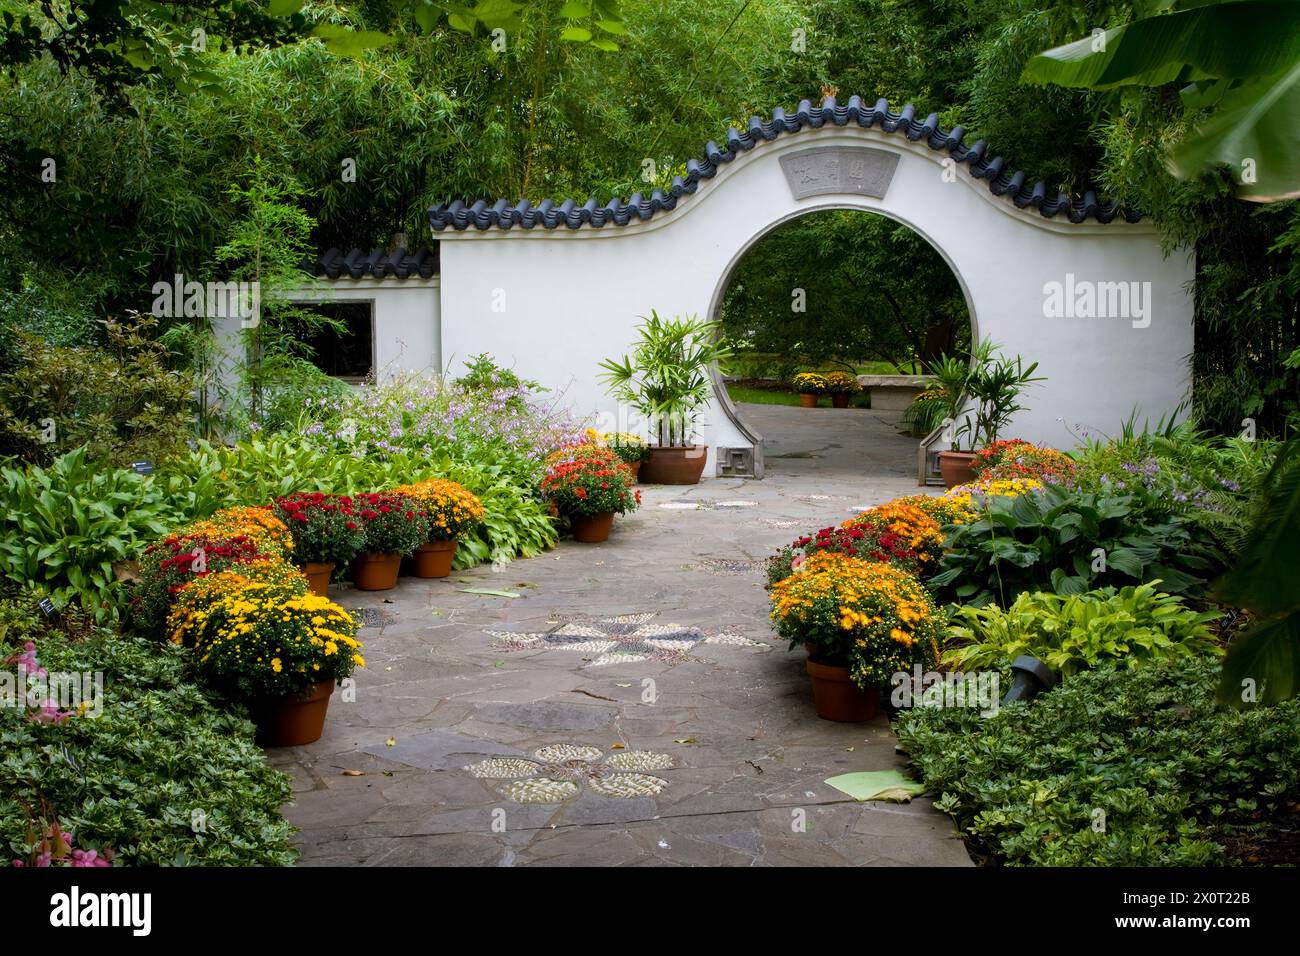 St. Louis, Missouri, USA. Chinesischer Garten, Missouri Botanical Garden. Nanjing Friendship Garden, mit Mondtor. Stockfoto